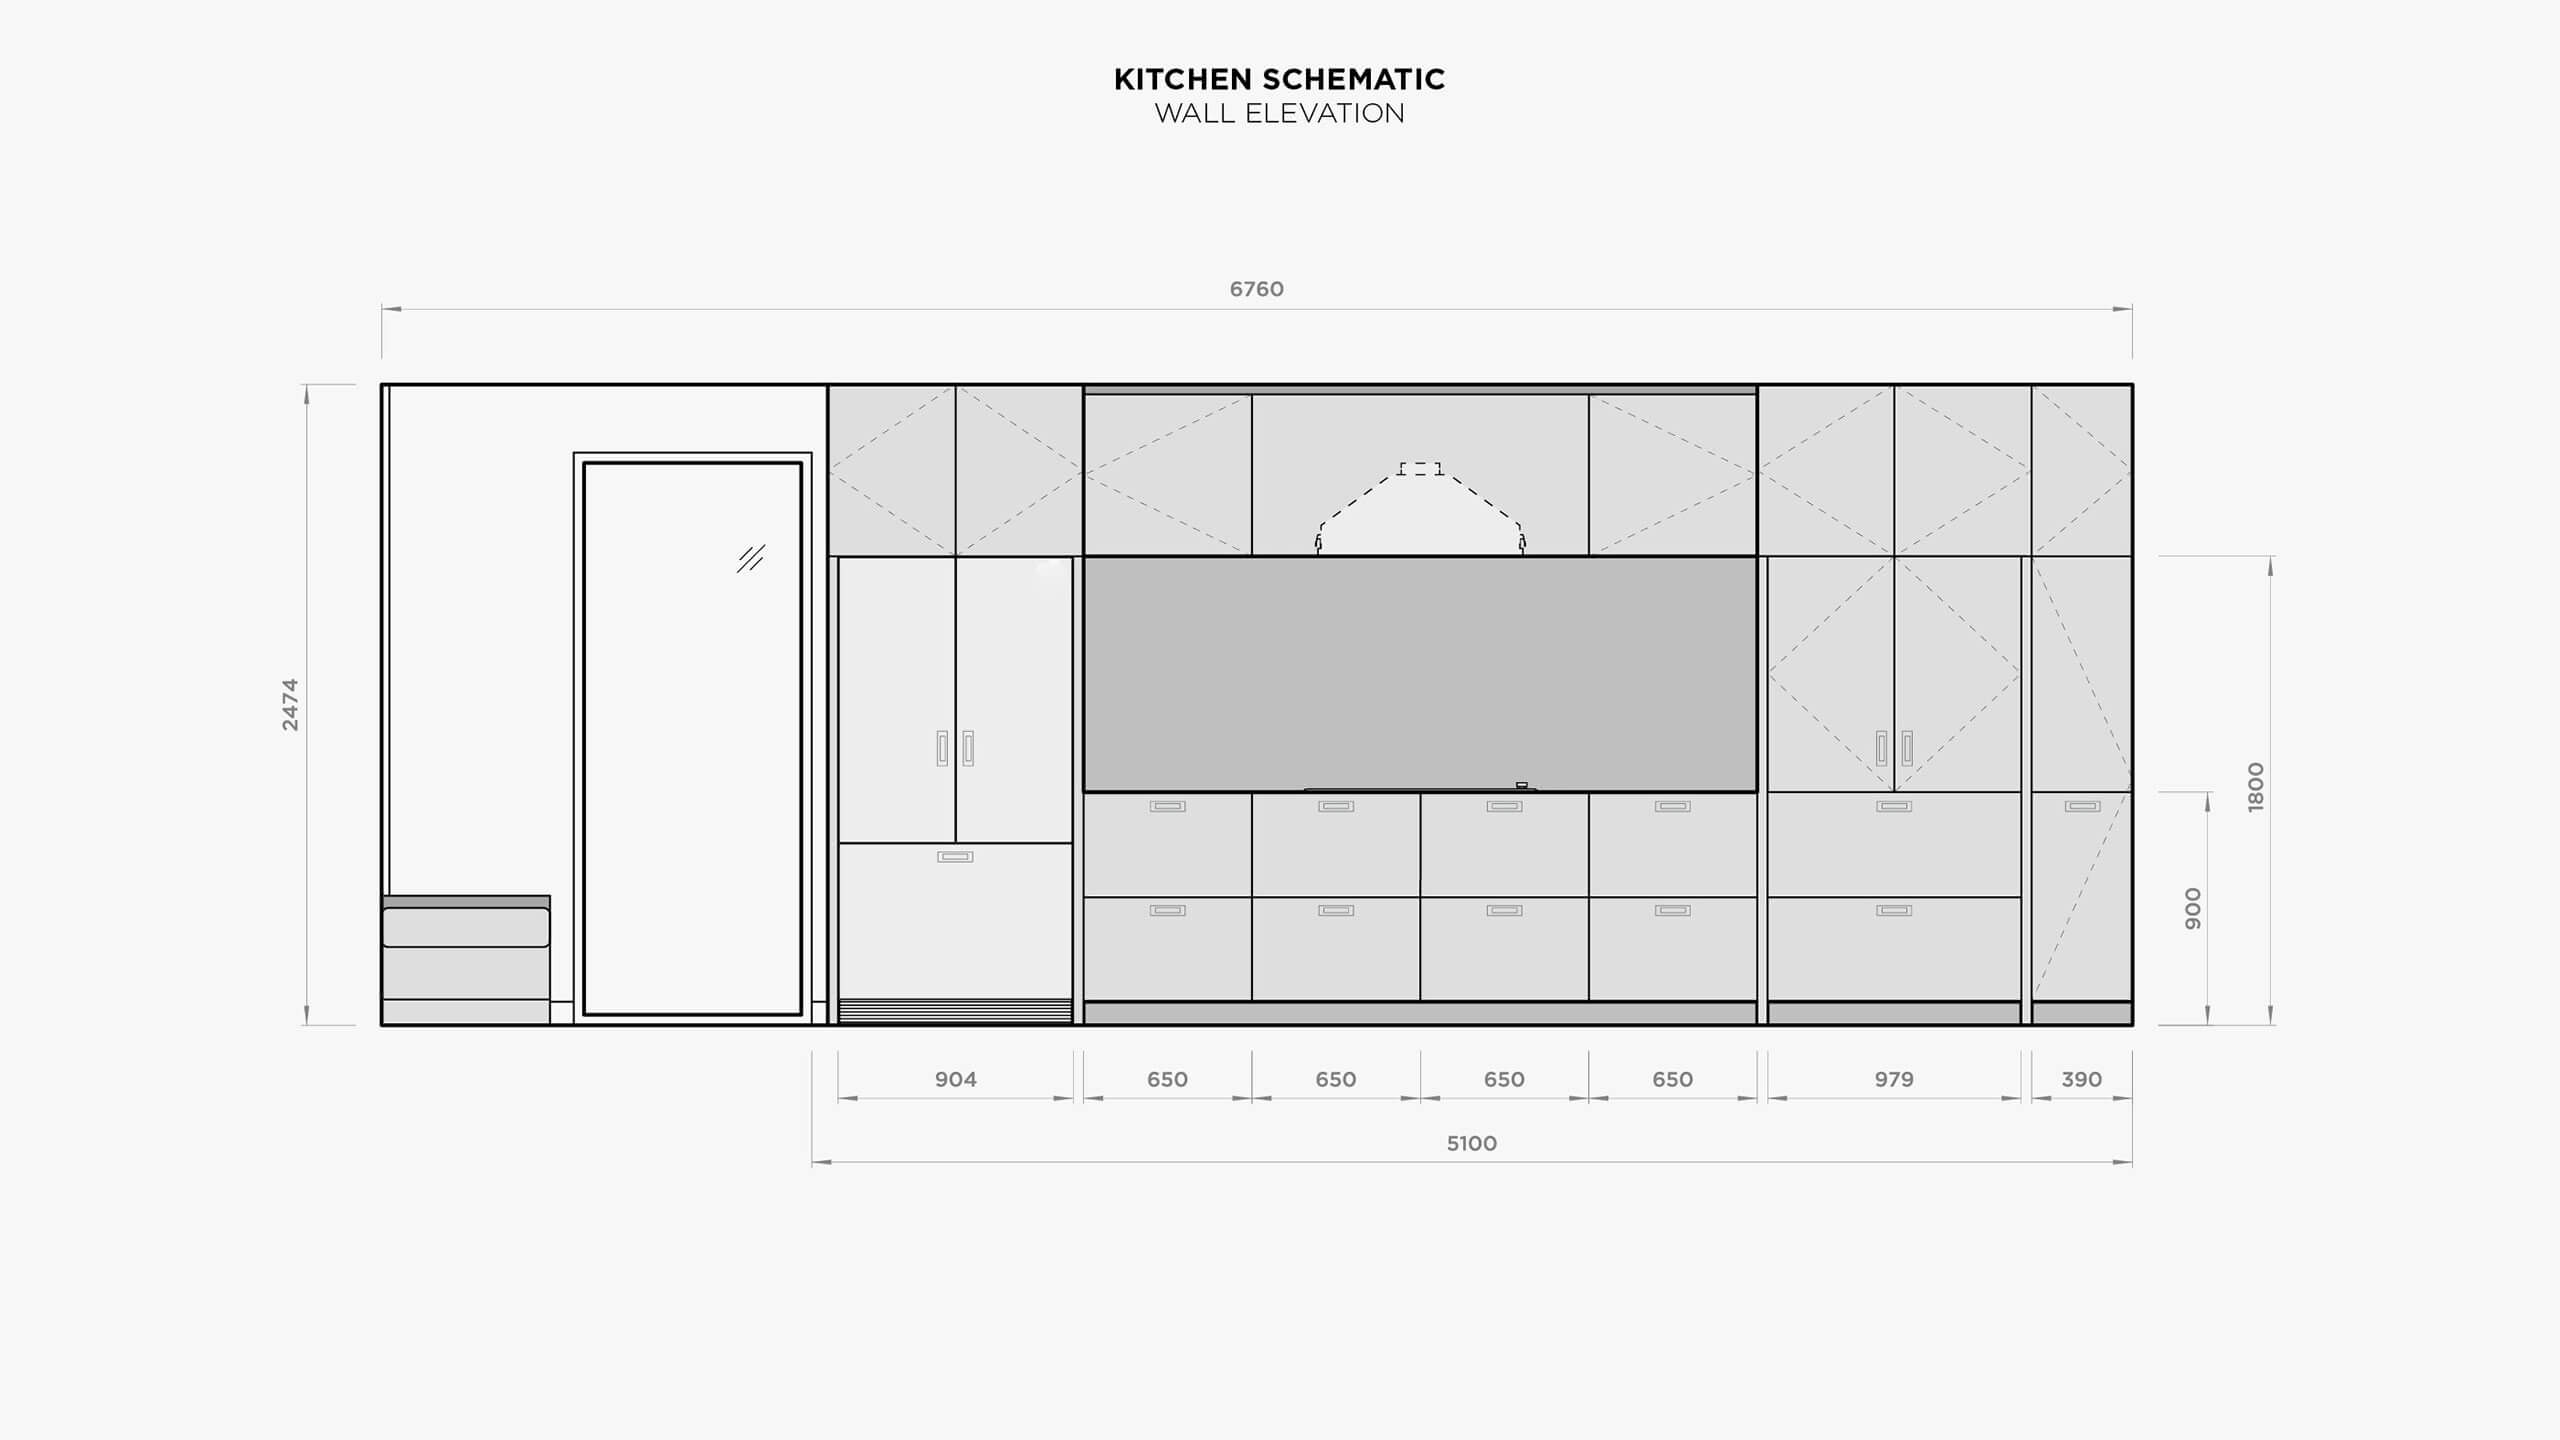 Hahei House Kitchen Schematic Wall Elevation Plan.